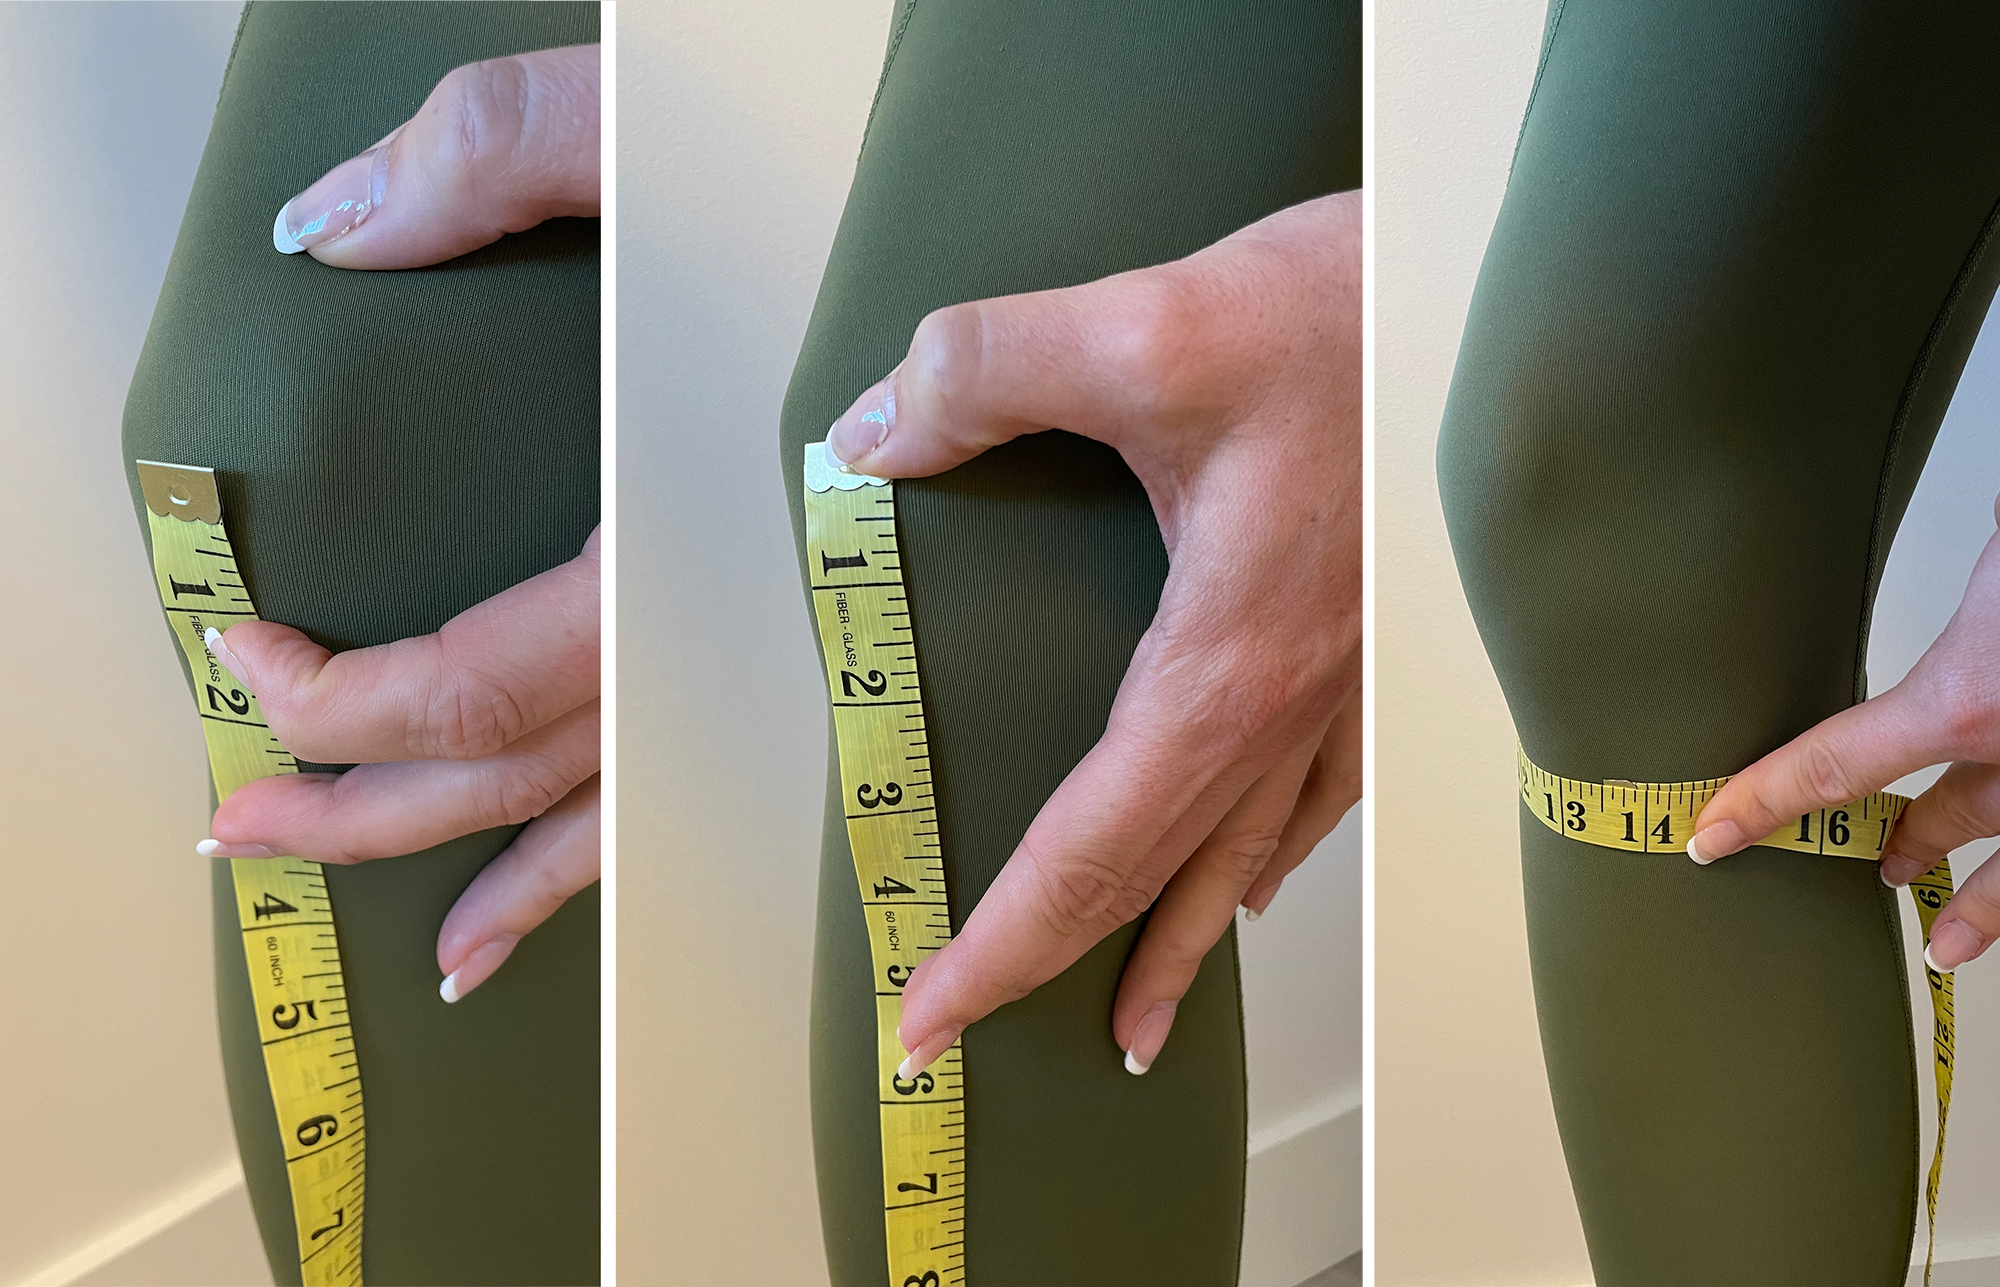 Measuring below the knee